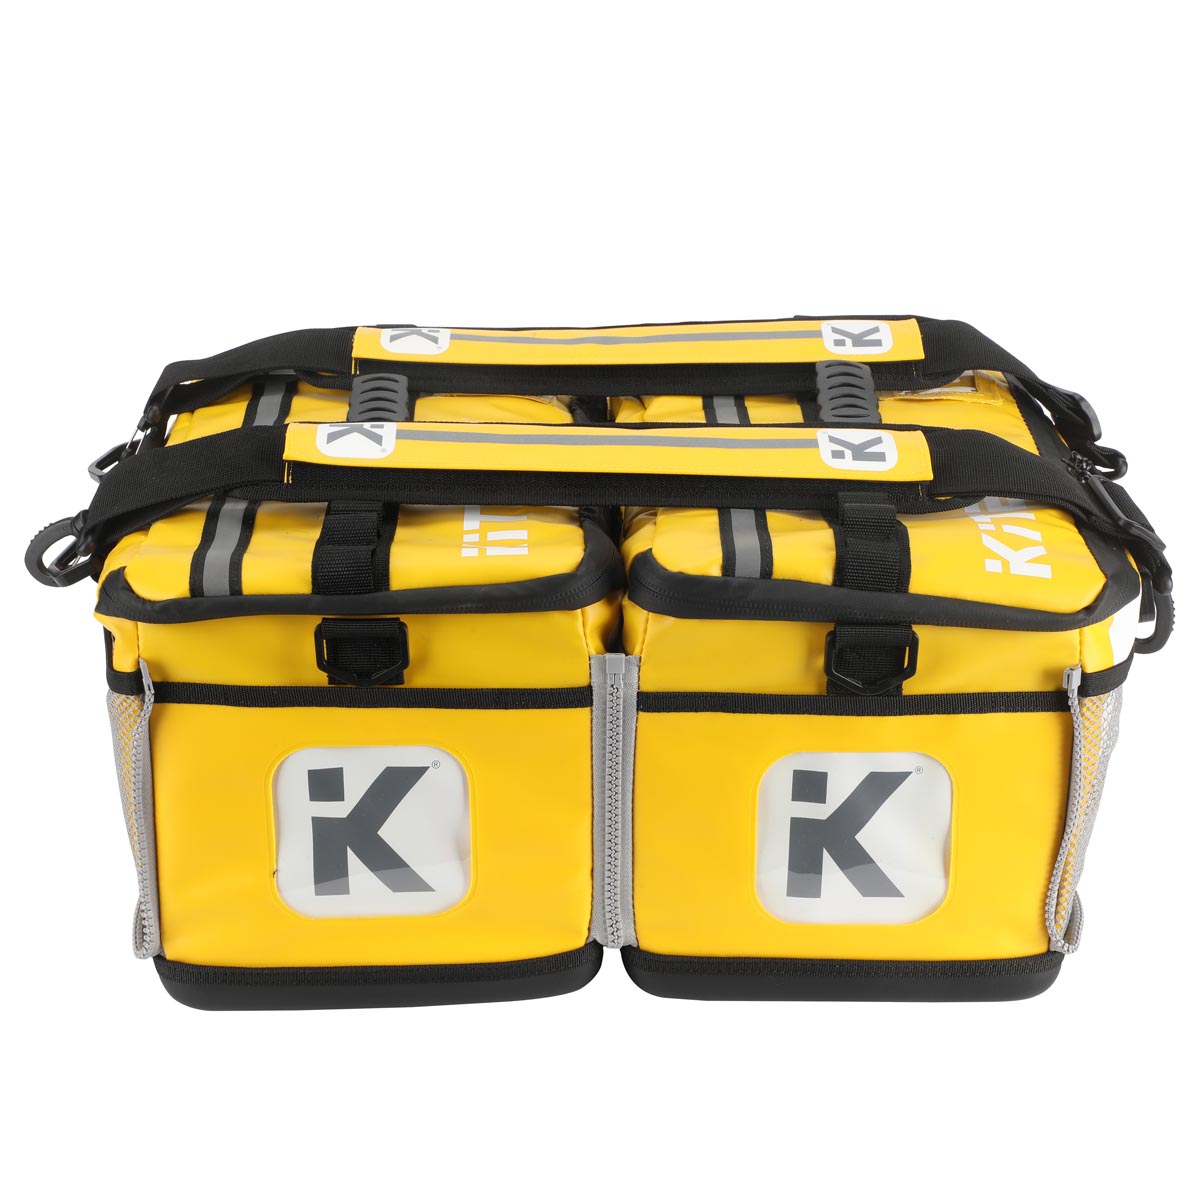 Double Zip Kit backpack Yellow